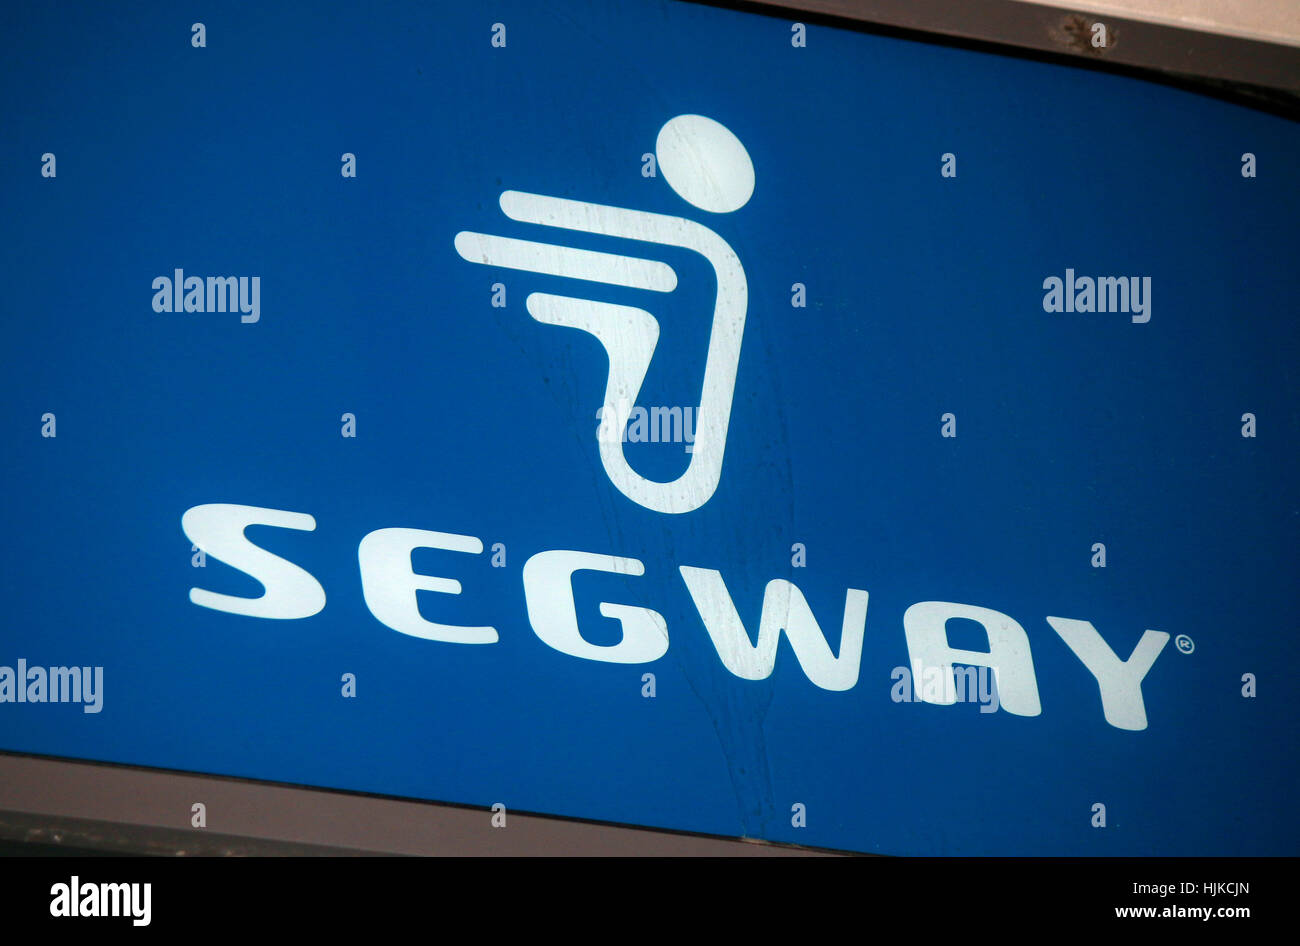 Das Logo der Marke "Segway", Berlin. Stockfoto